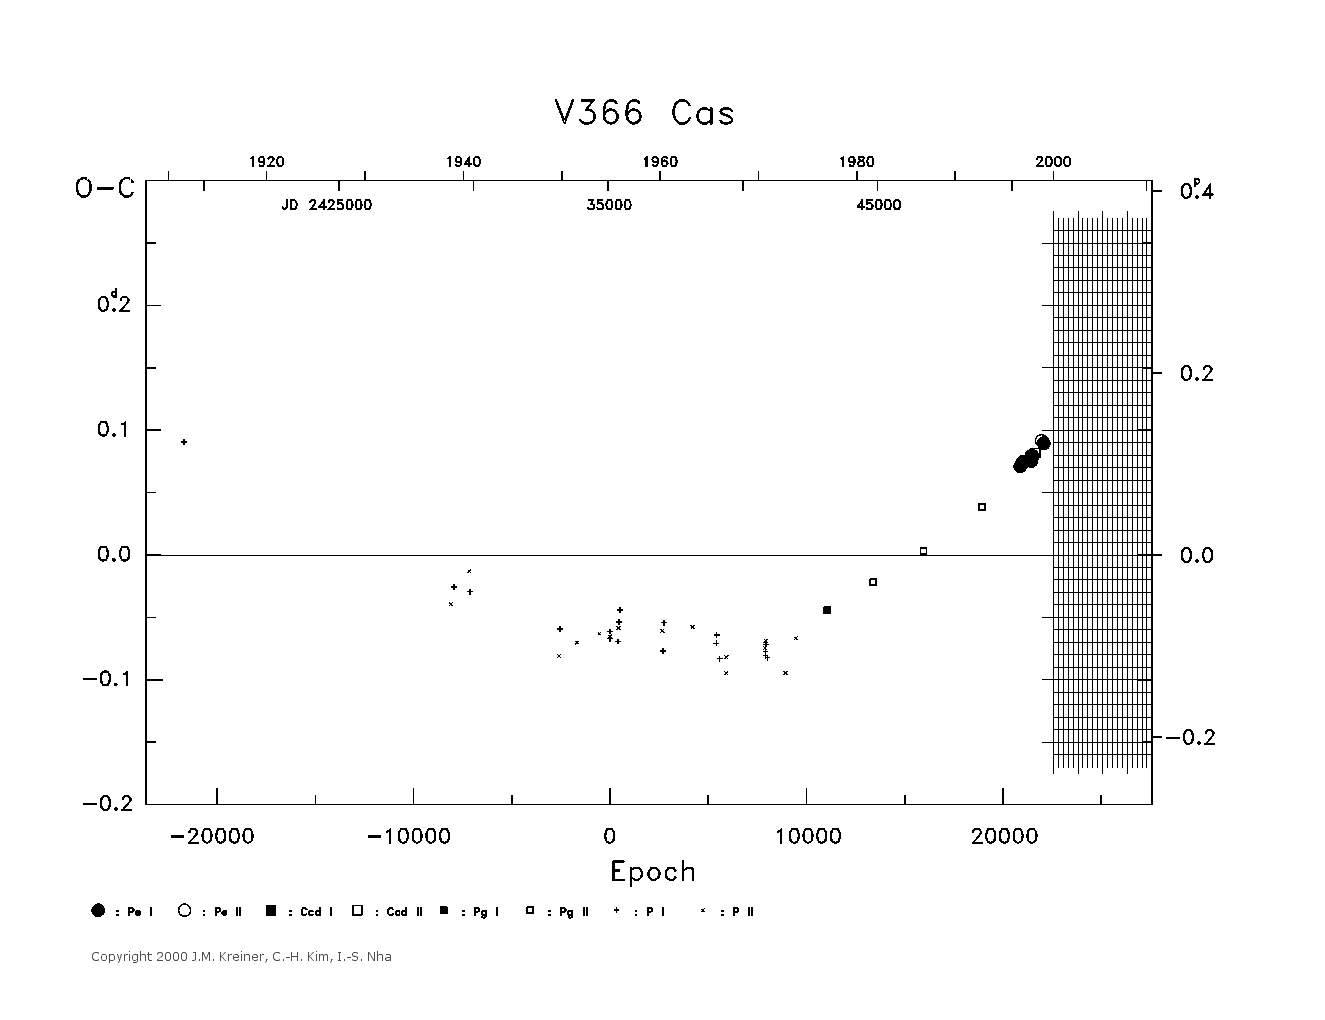 [IMAGE: large V366 CAS O-C diagram]